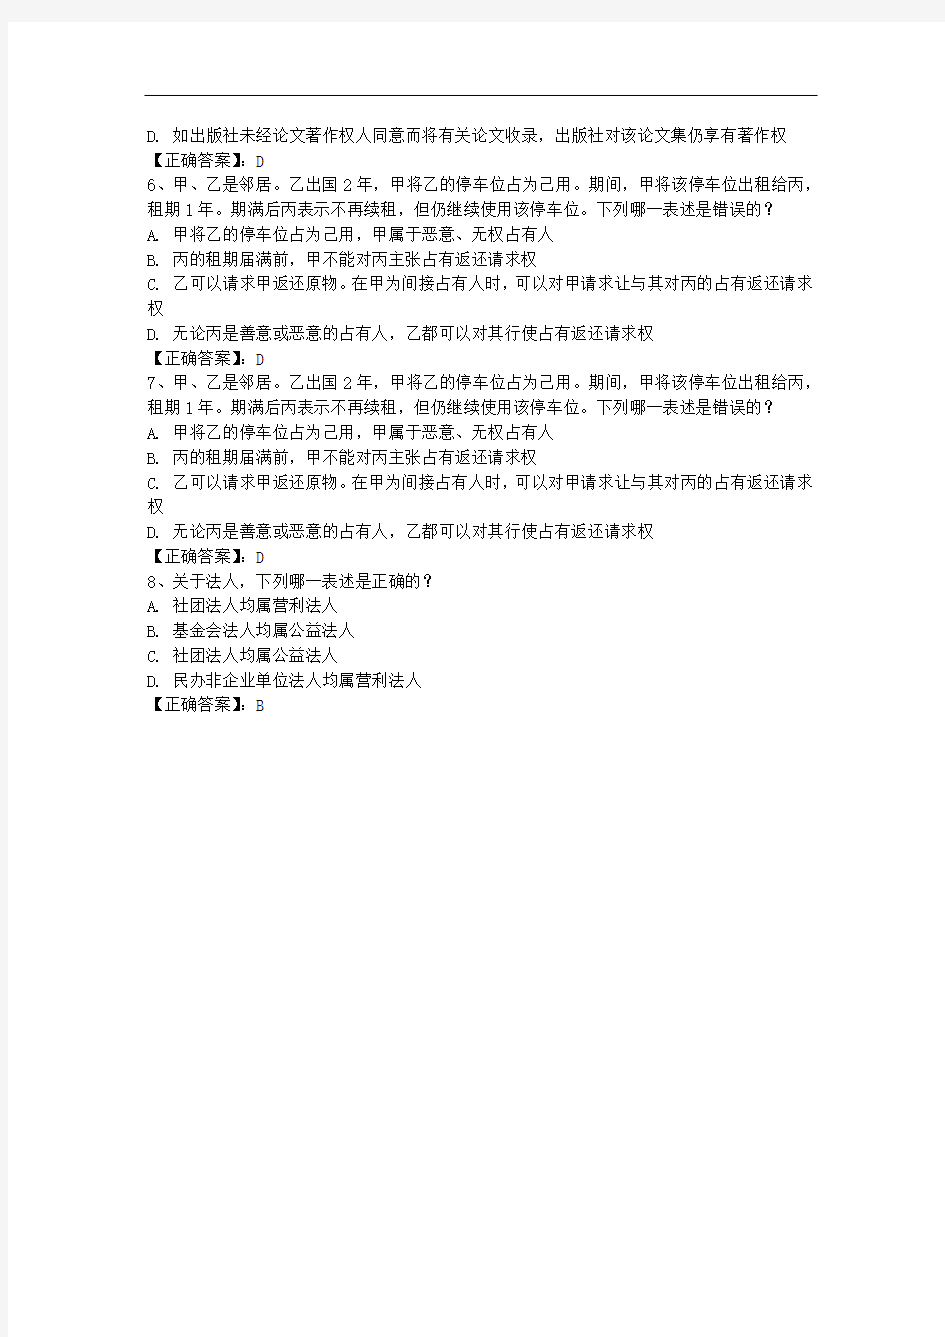 台湾省国家司法考试卷四复习方法每日一练(2014.7.25)